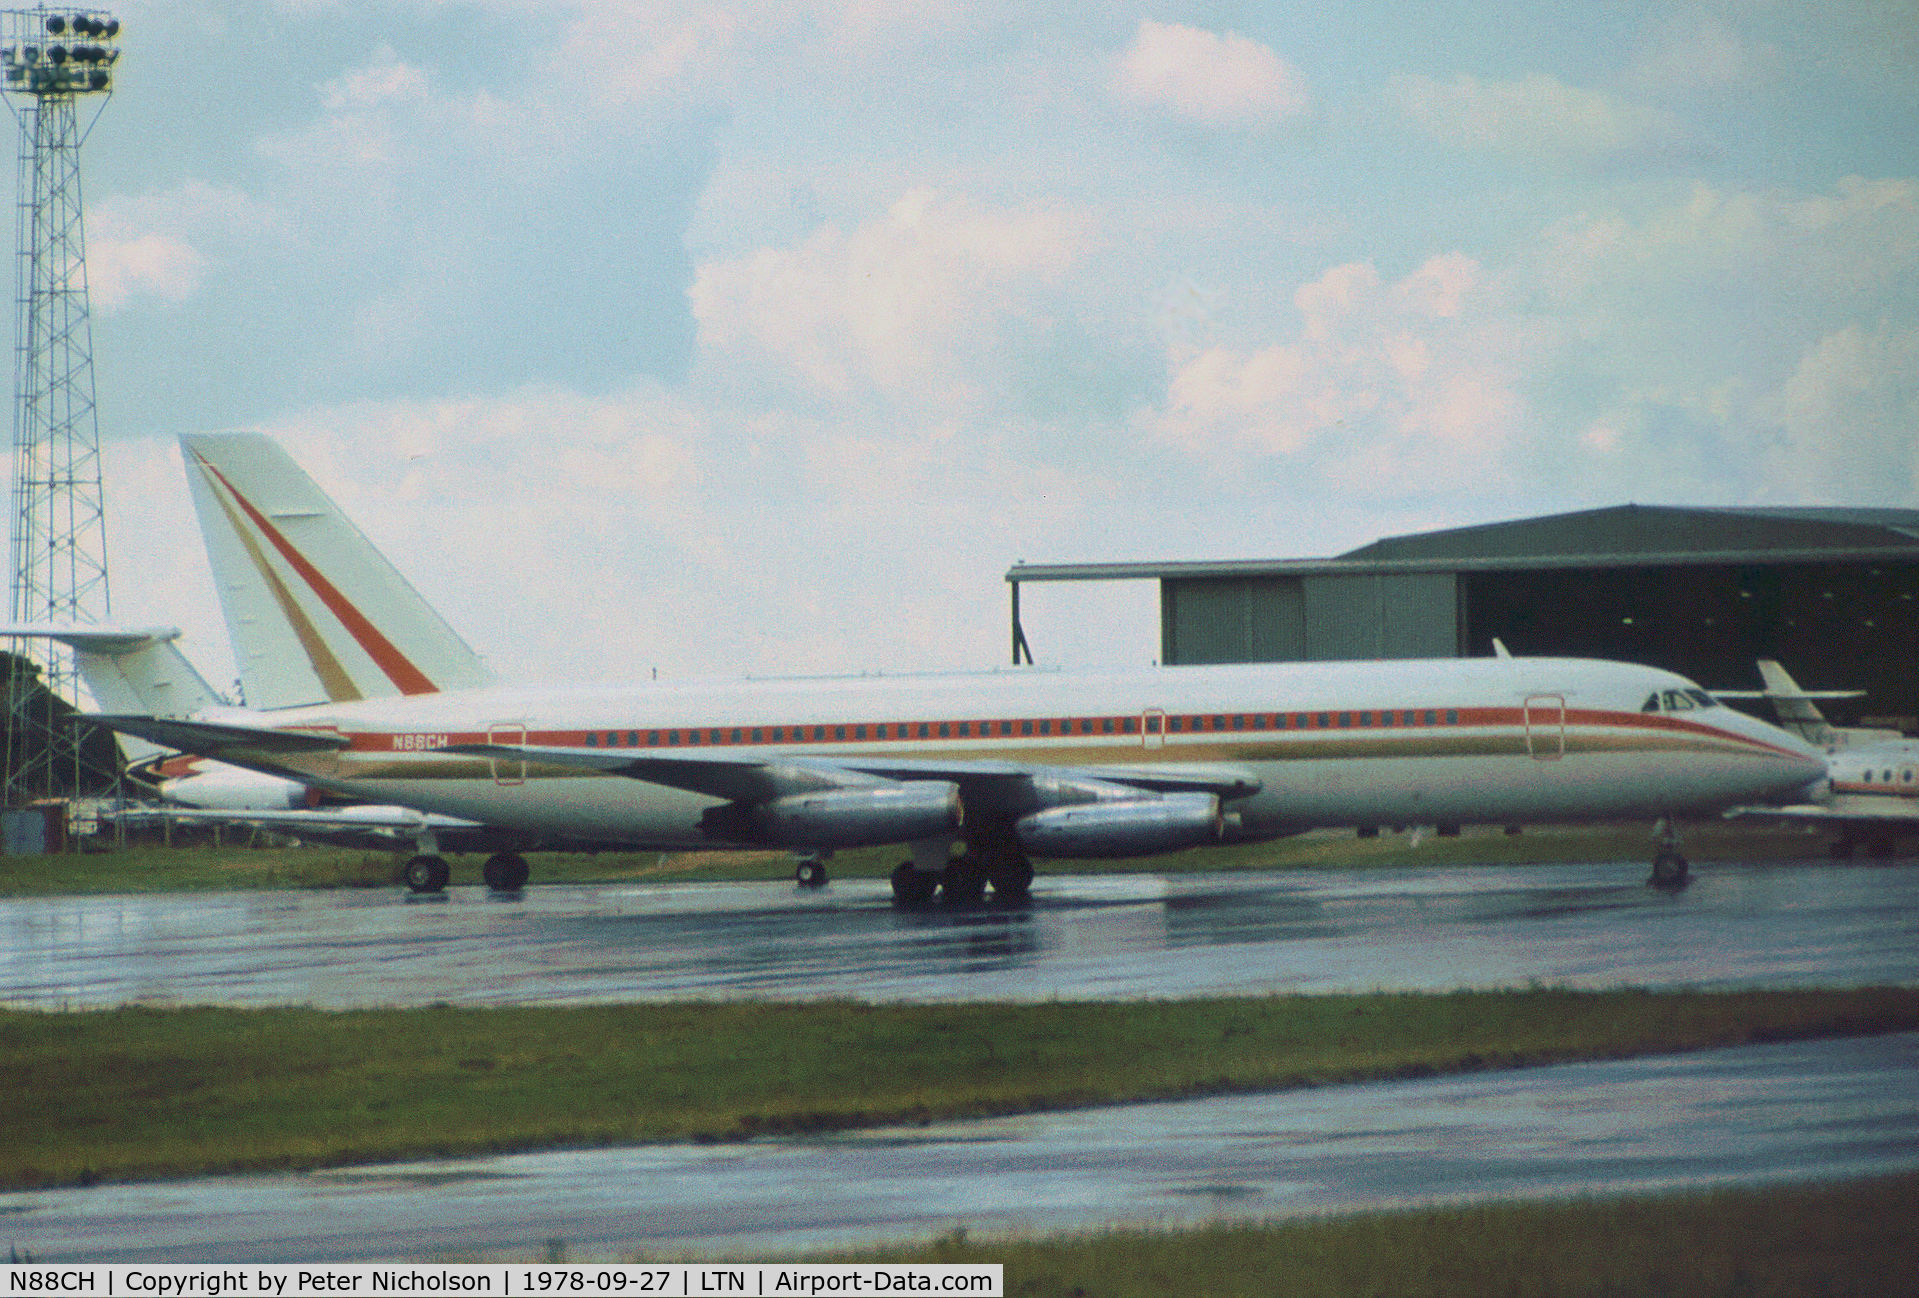 N88CH, 1961 Convair 880-22M-22 C/N 22-7-6-58, Convair 880 as seen at Luton in the Summer of 1978.